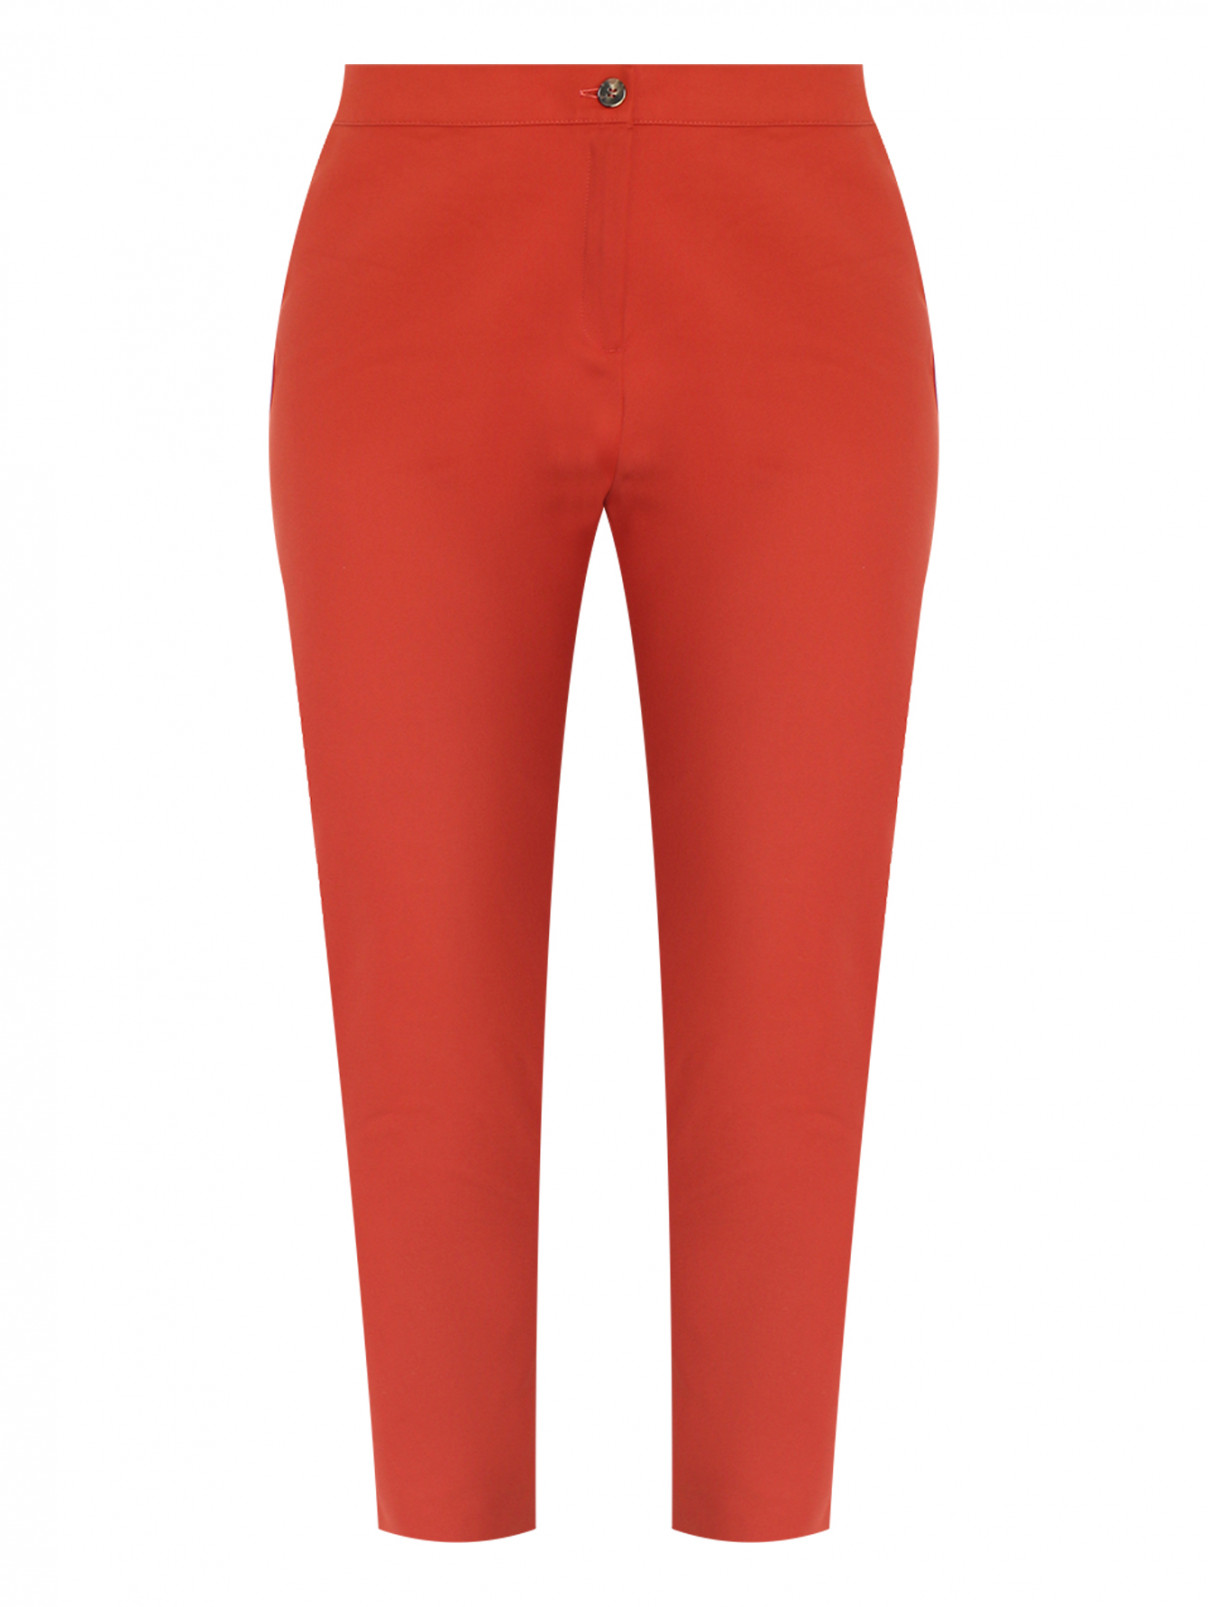 Зауженные брюки из хлопка Marina Rinaldi  –  Общий вид  – Цвет:  Оранжевый